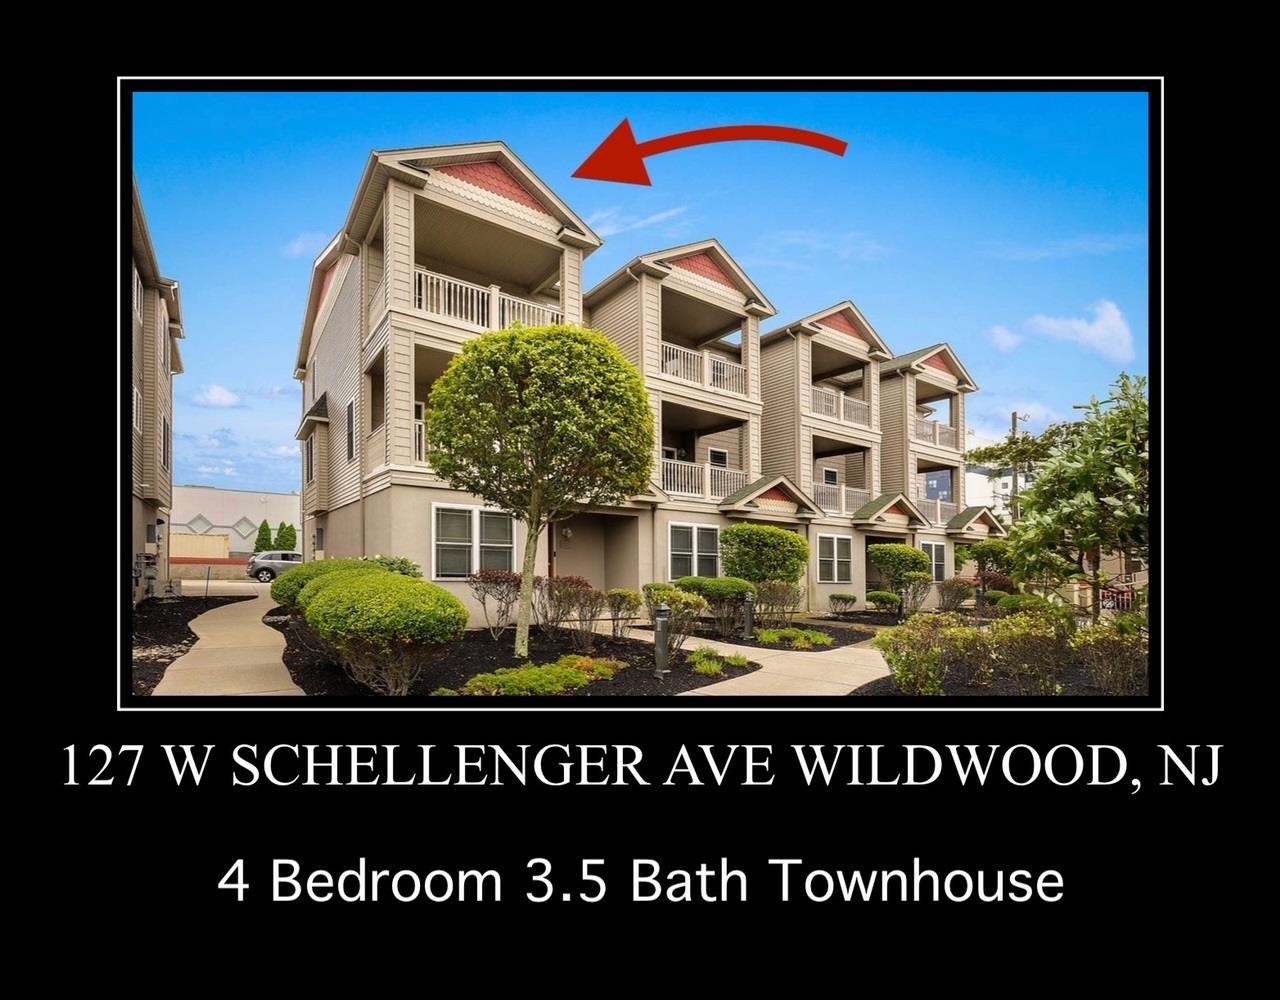 127 W Schellenger Avenue - Wildwood